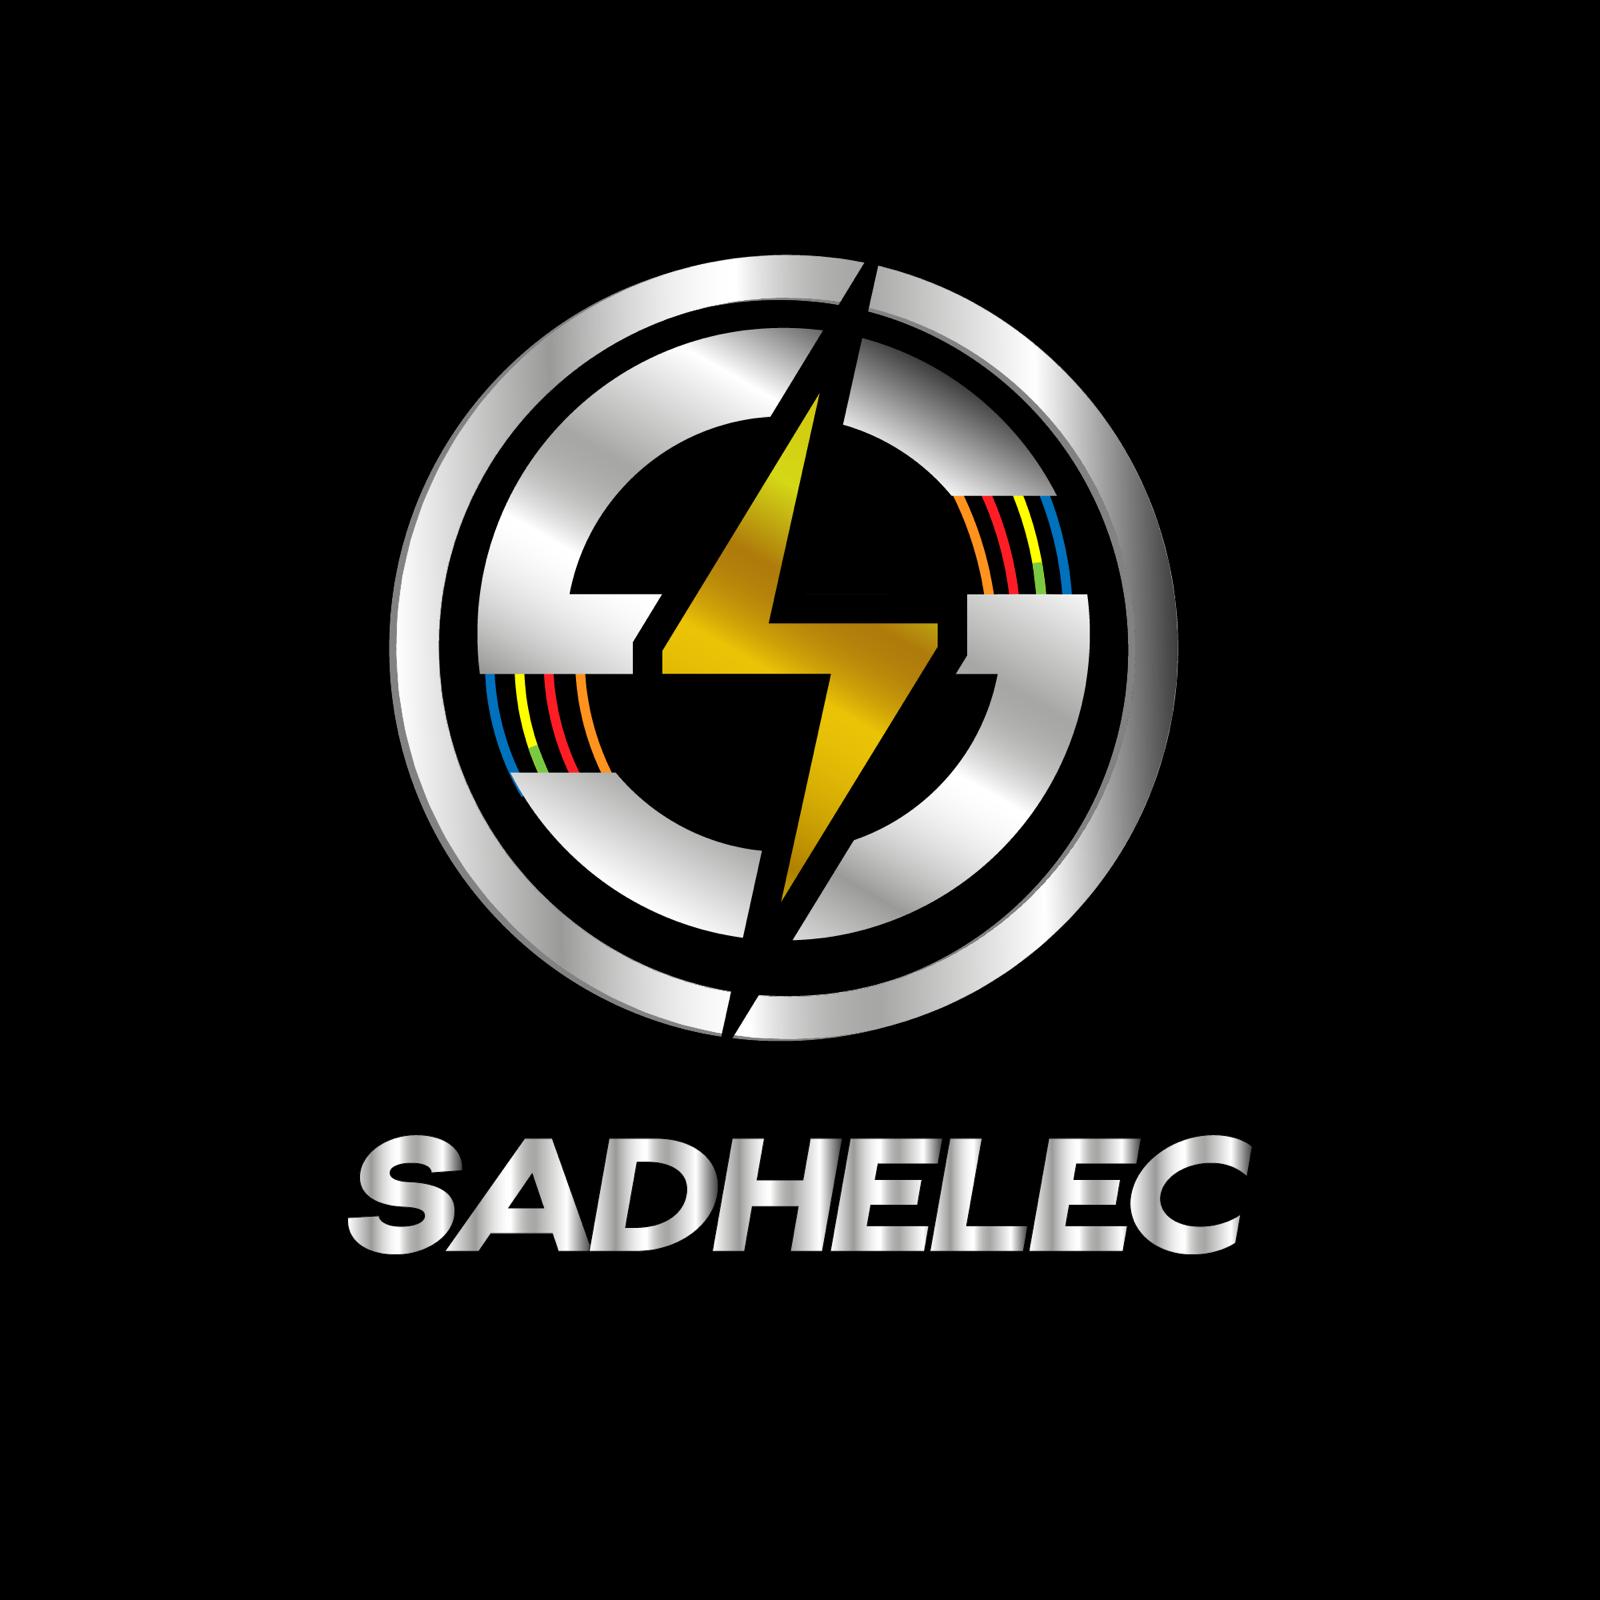 Sadhelec